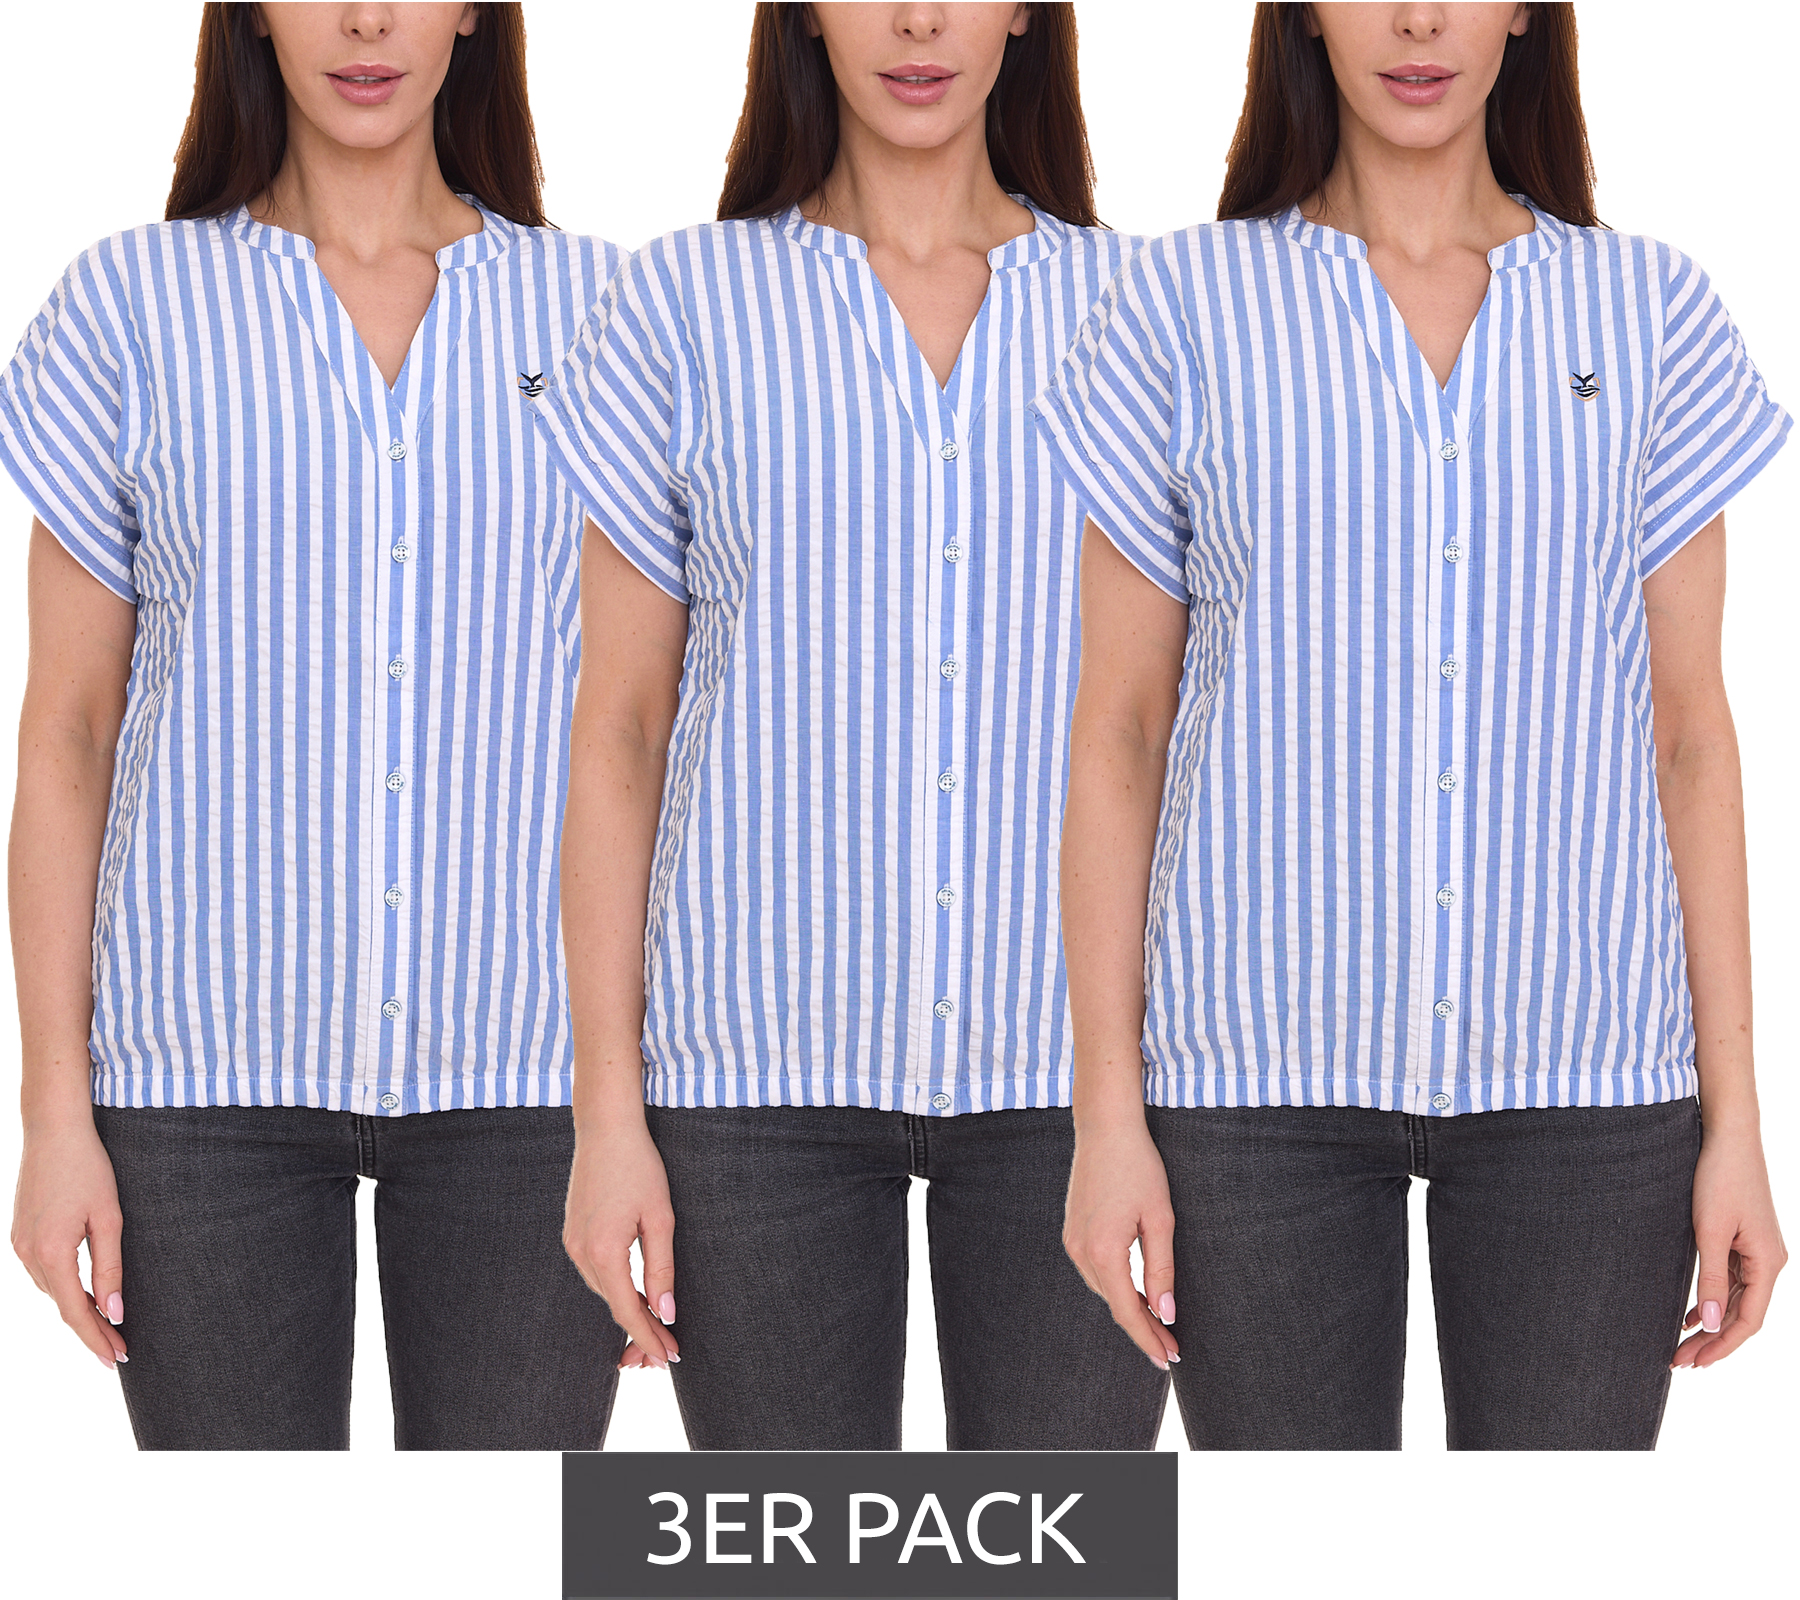 3er Pack DELMAO Damen Sommer-Bluse gestreift Kurzarm-Bluse Sommer-Shirt 64287360 Blau/Weiß von DELMAO